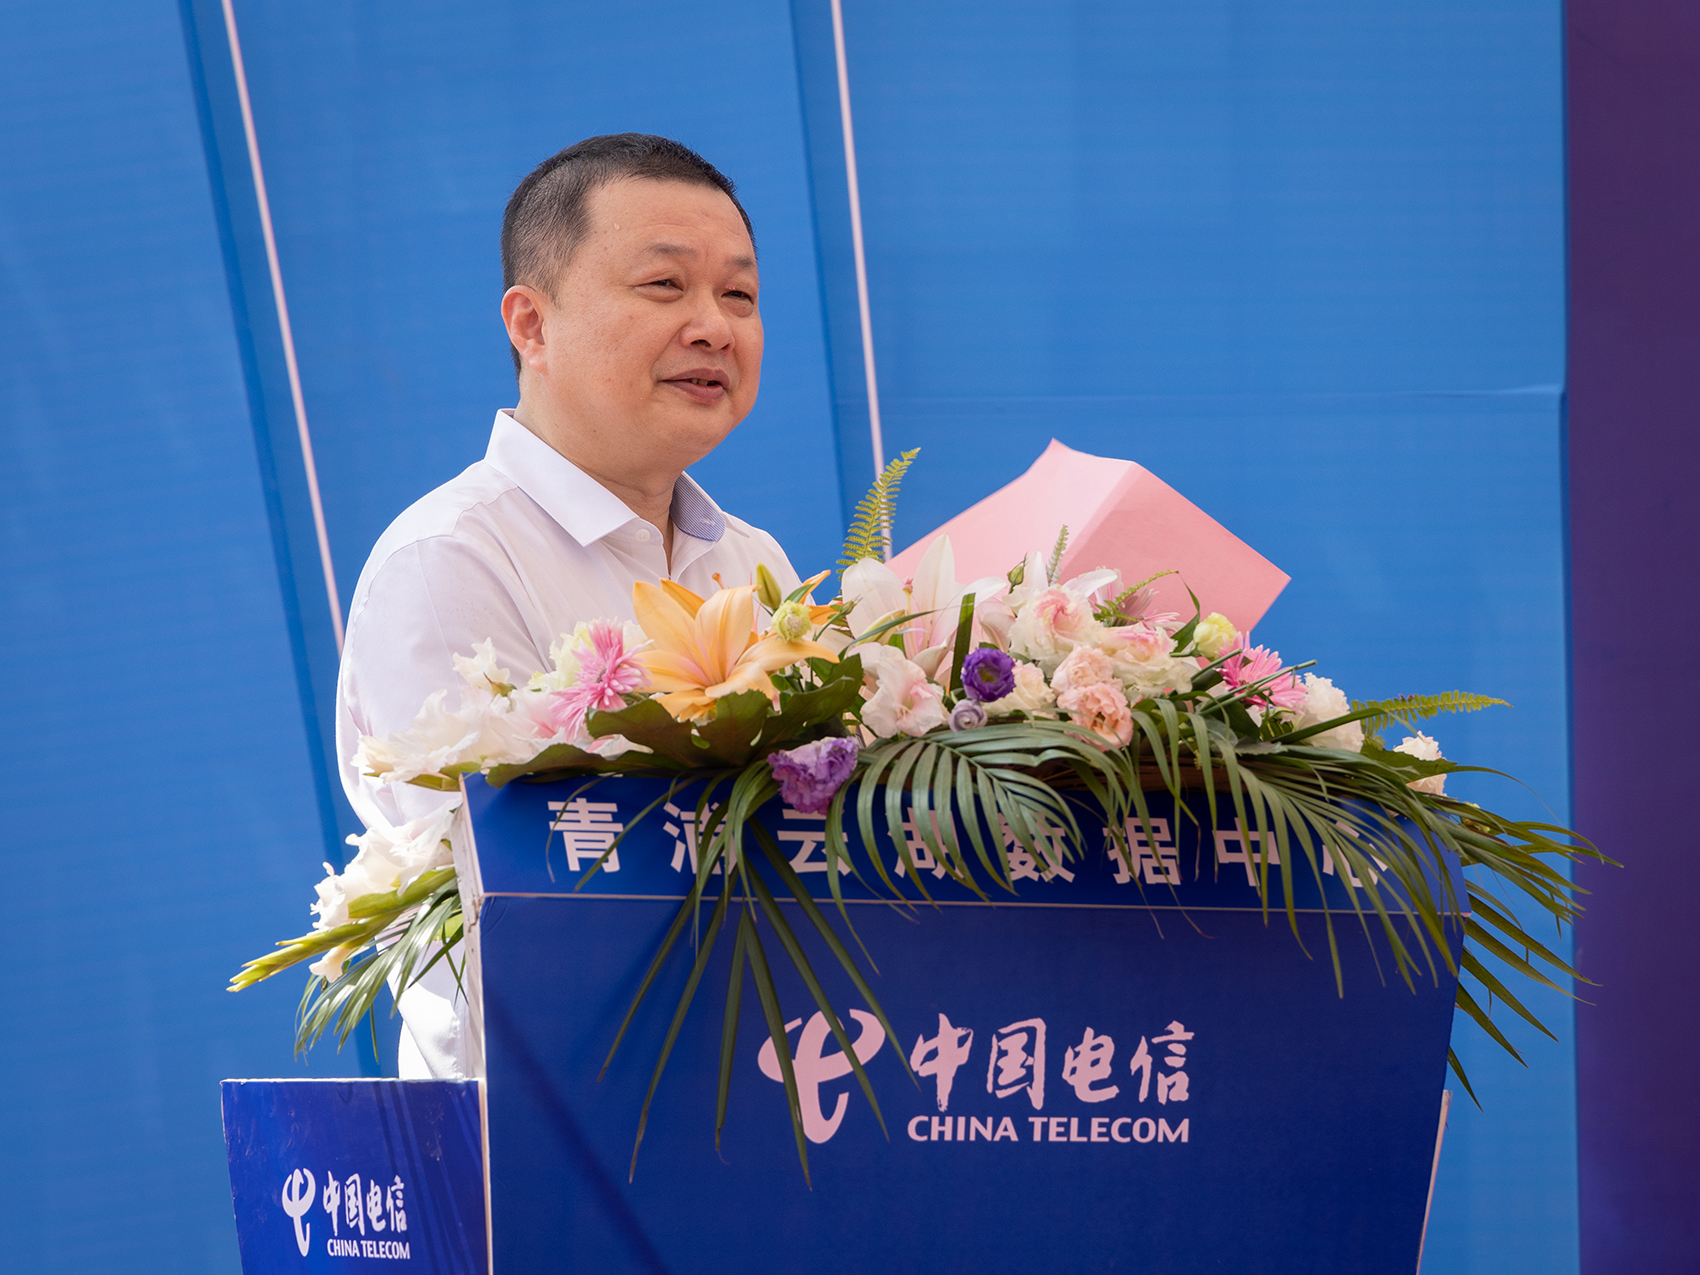 中国电信上海公司党委书记、总经理龚勃会上致辞。